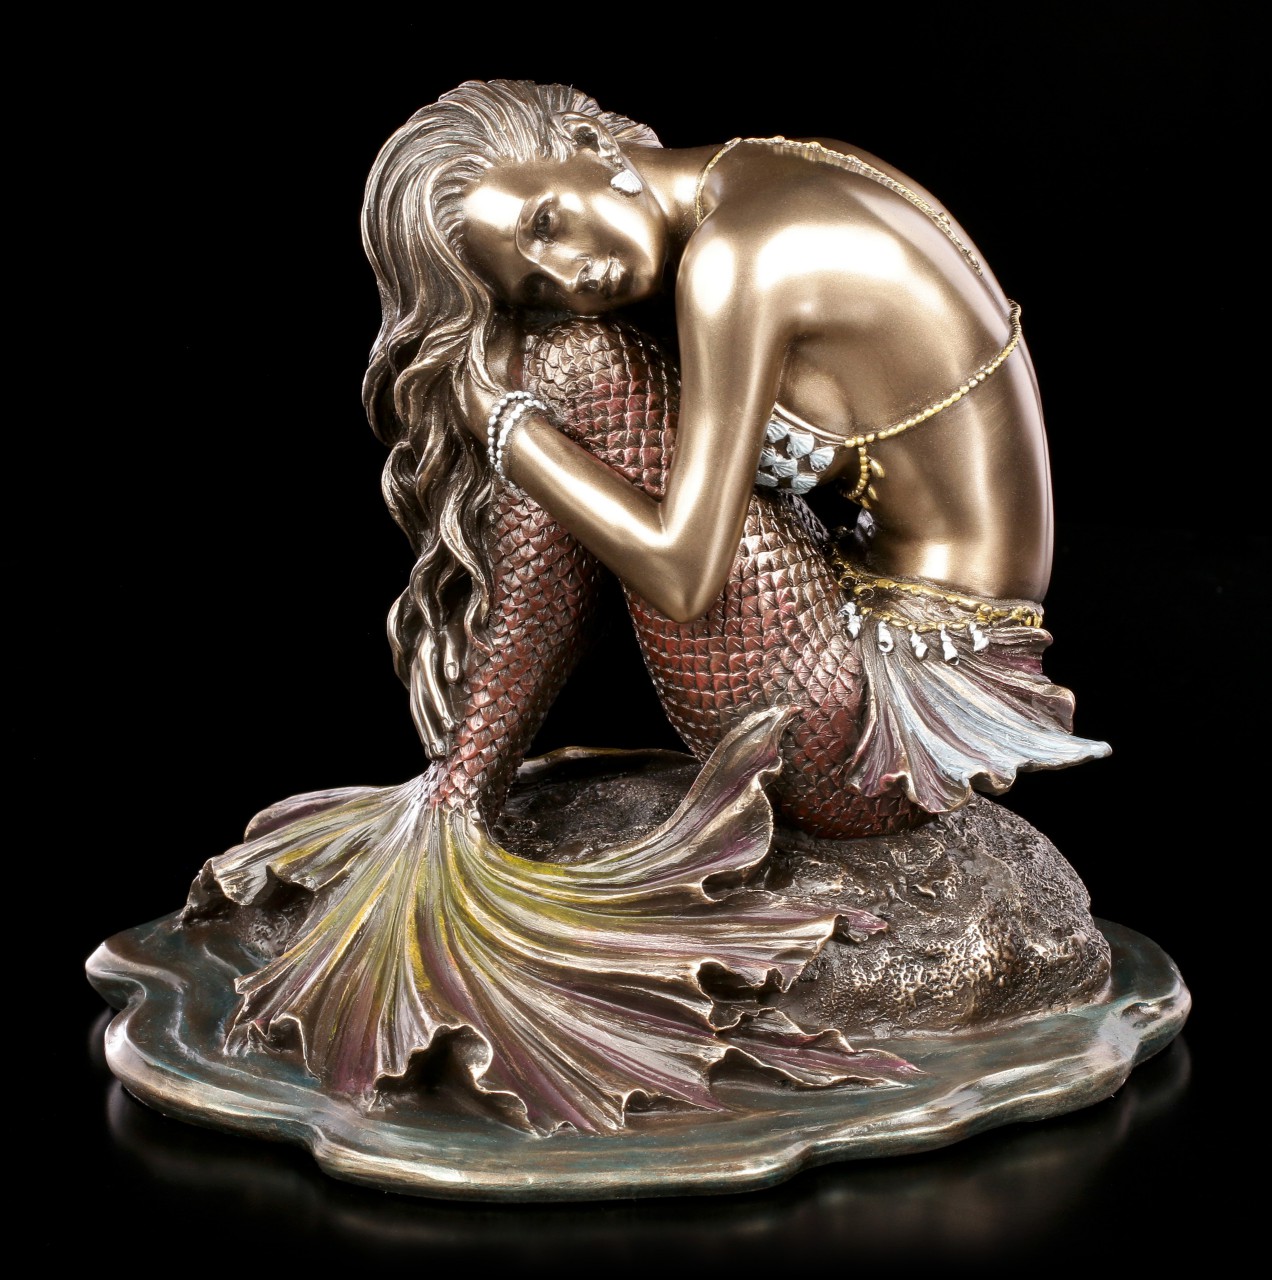 Mermaid Figurine sitting on Rock